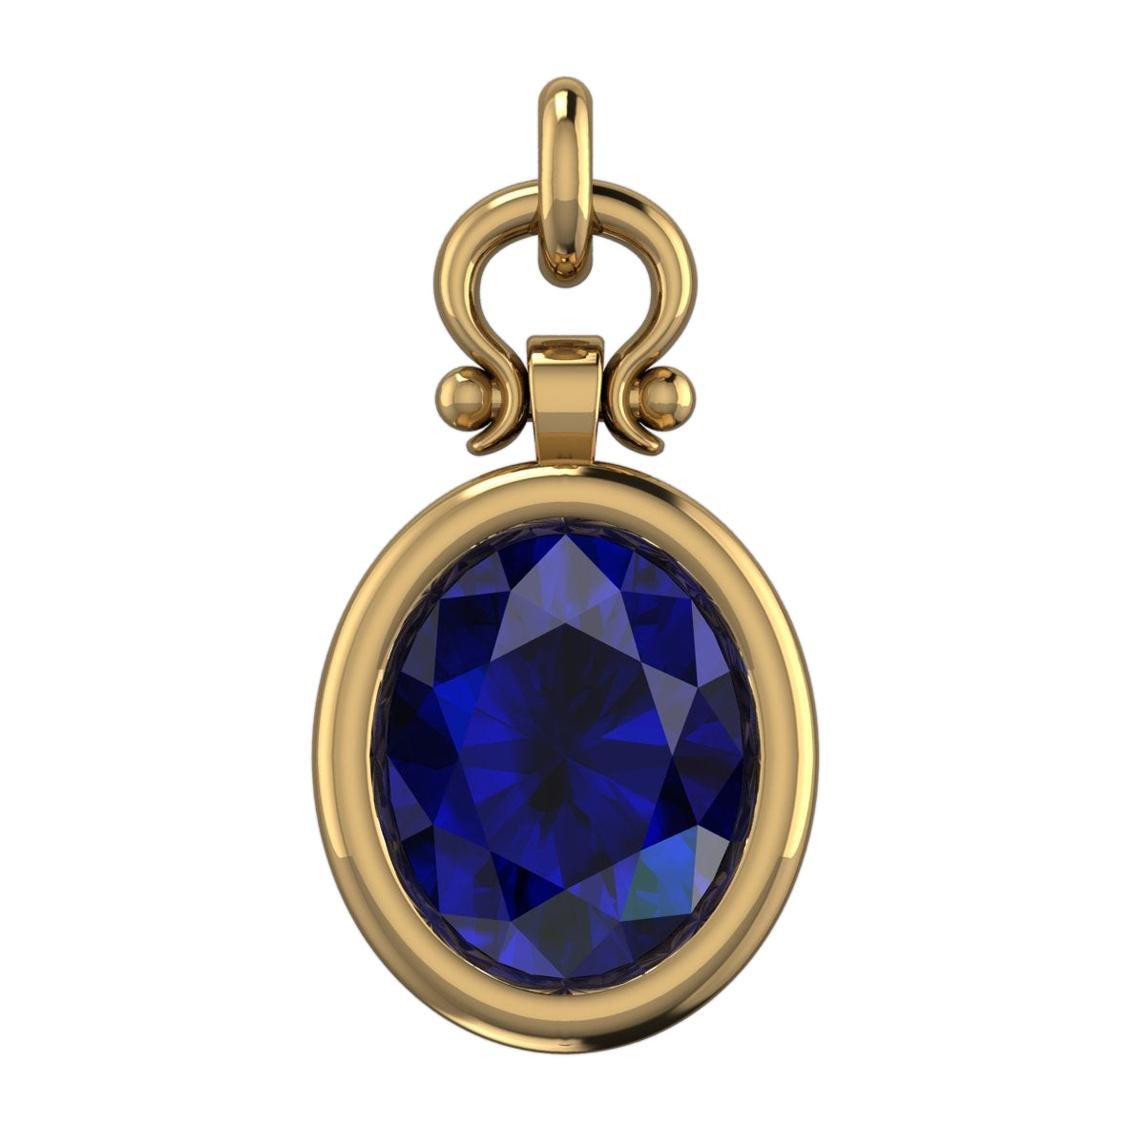 Berberyn Certified 4.66 Carat Oval Blue Sapphire Custom Pendant Necklace in 18k For Sale